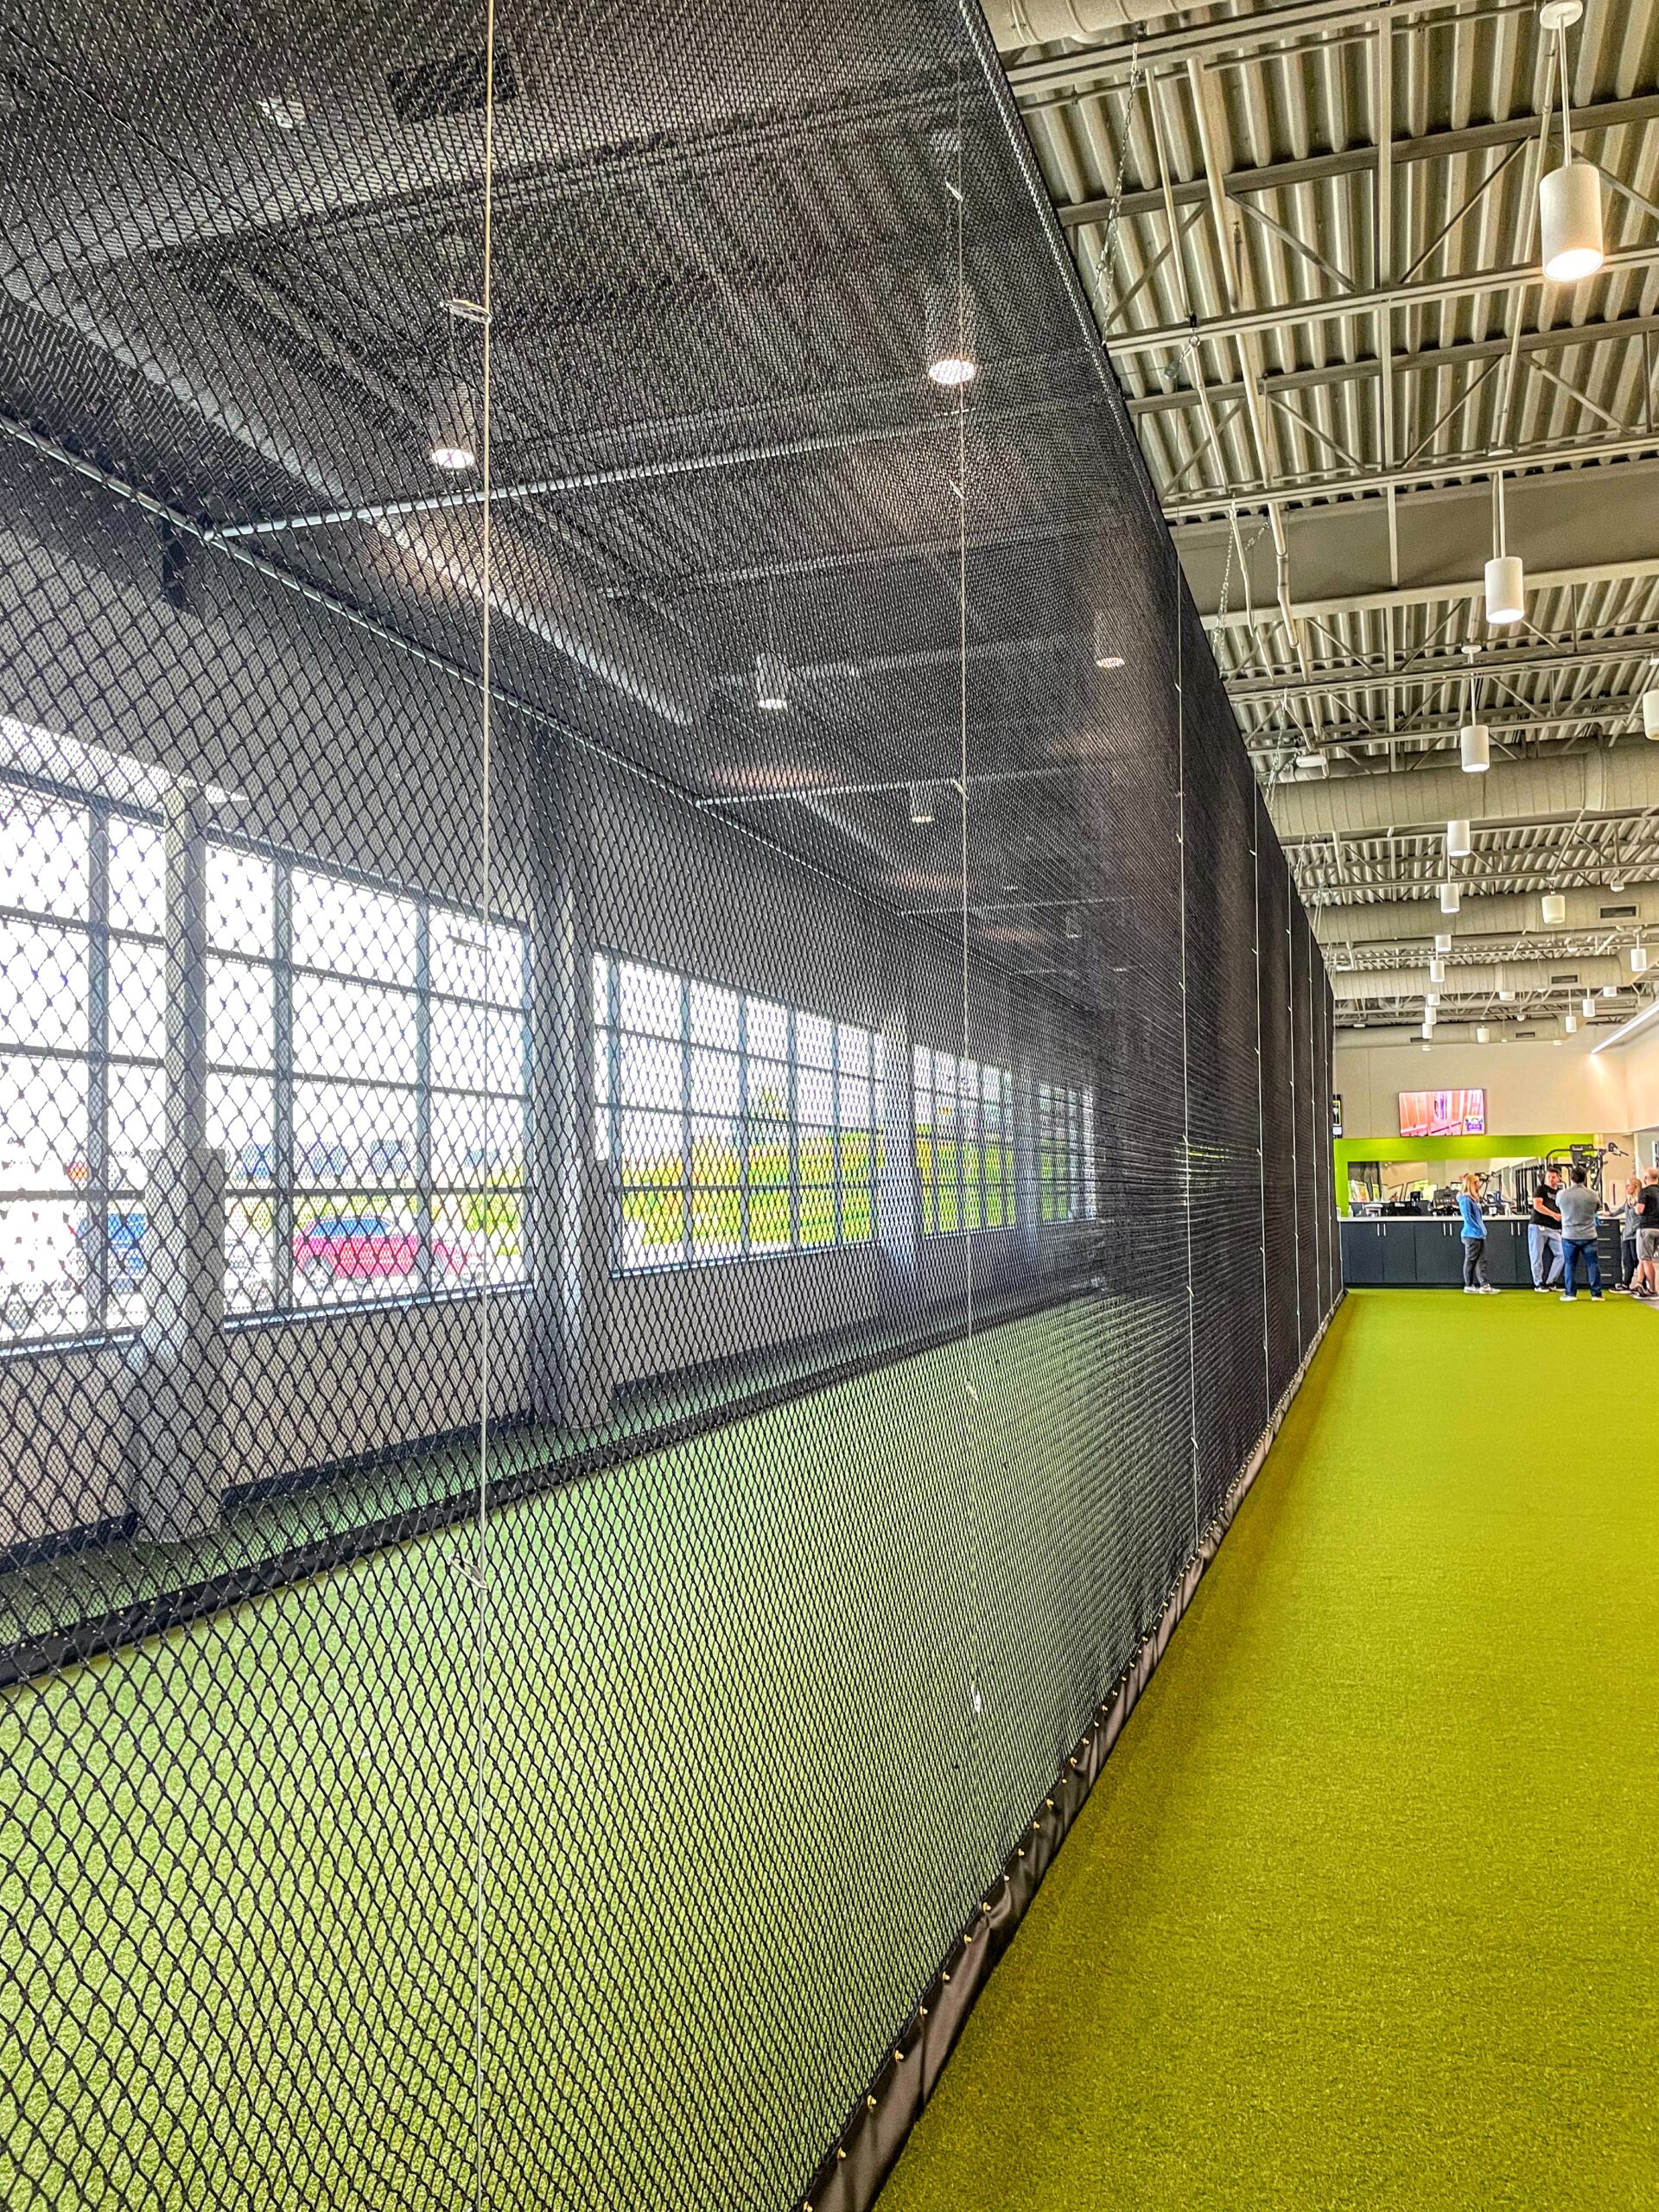 AirCage indoor retractable batting cage